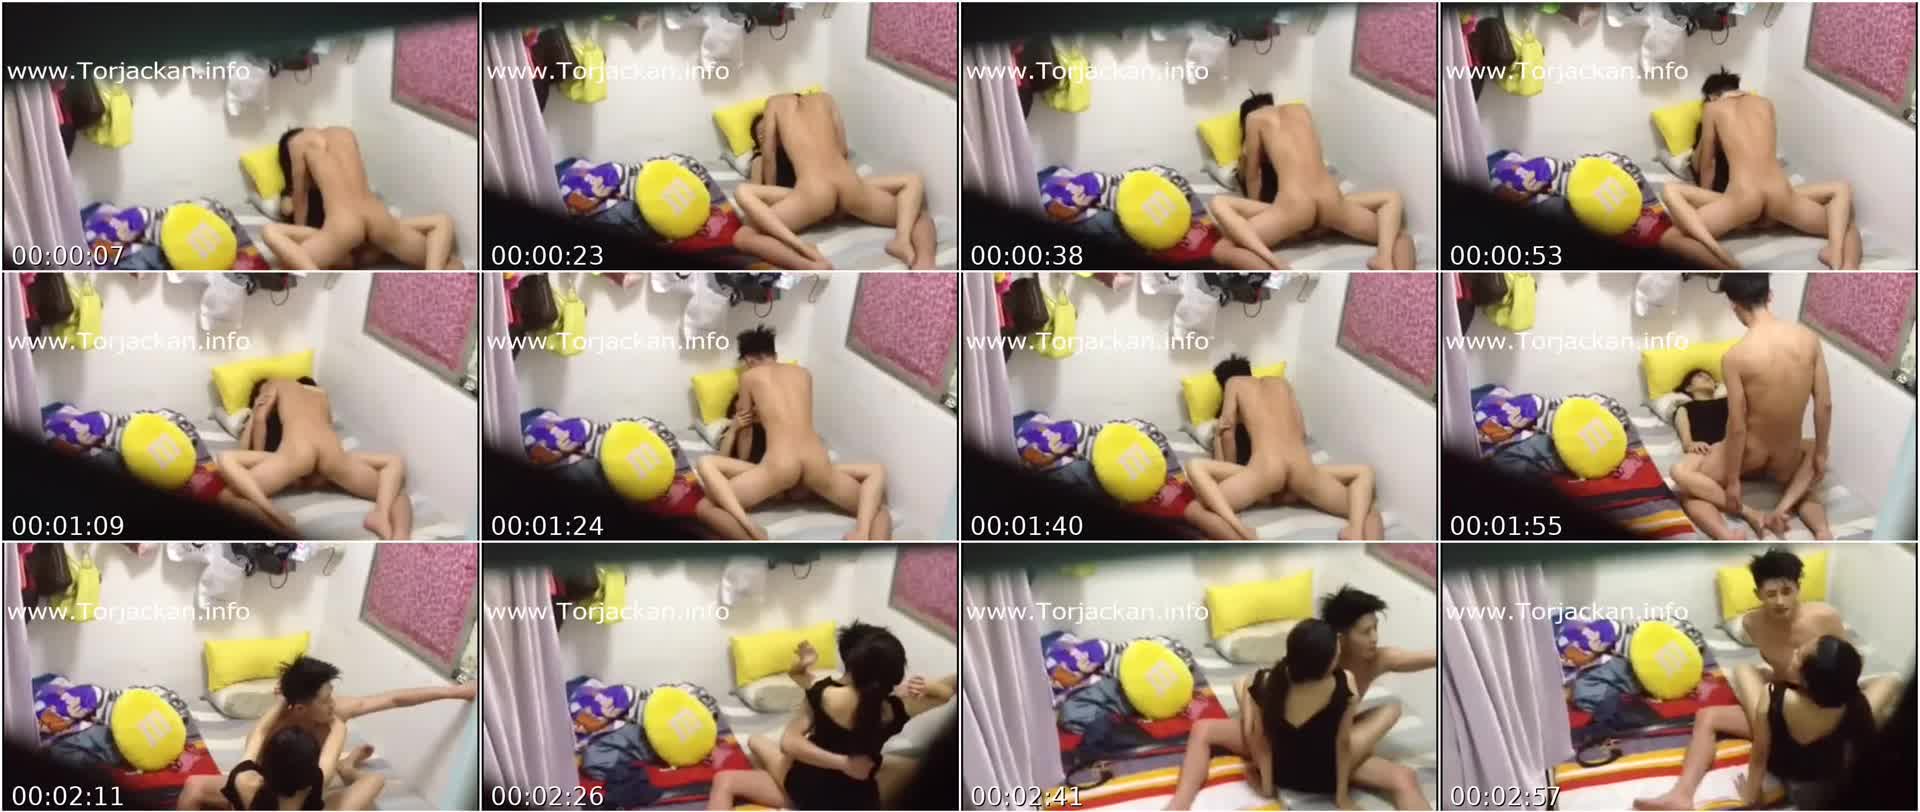 Pokpok Kong Ex GF Tinira ng Kumpare Ko sa Motel